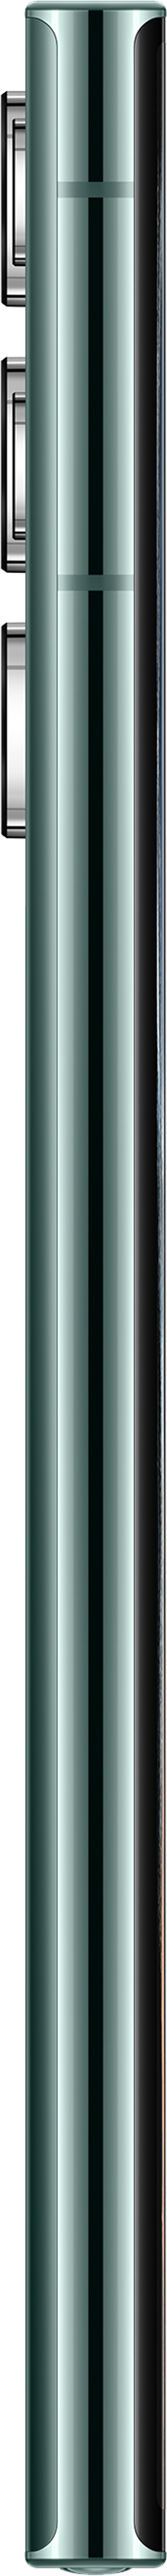 Samsung Galaxy S22 Ultra 512GB Dual-SIM Grön